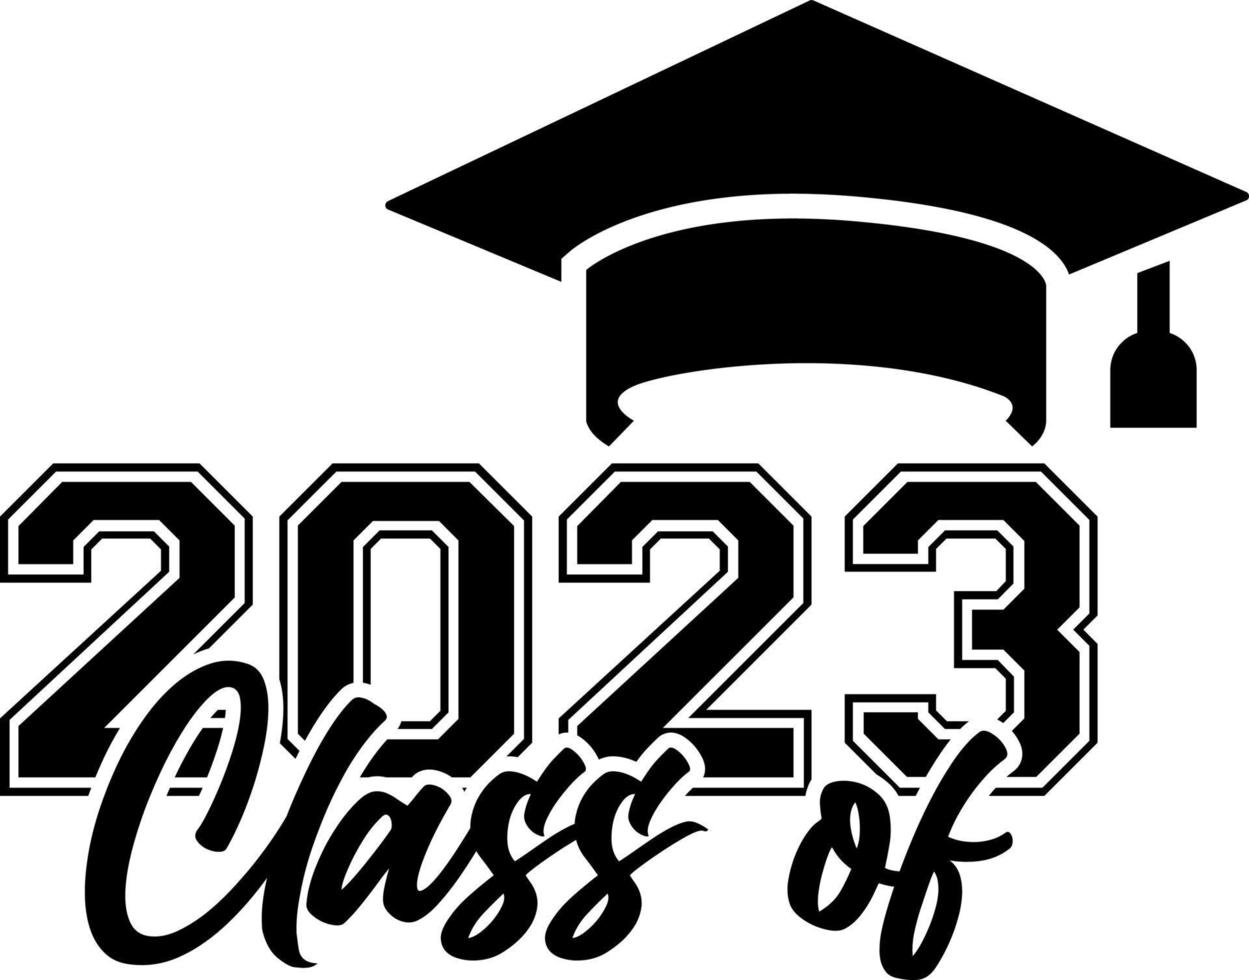 Klasse von 2023 Schwarz-Weiß-Designvorlage, Autofensteraufkleber, Pod, Cover, isolierter schwarzer Hintergrund vektor